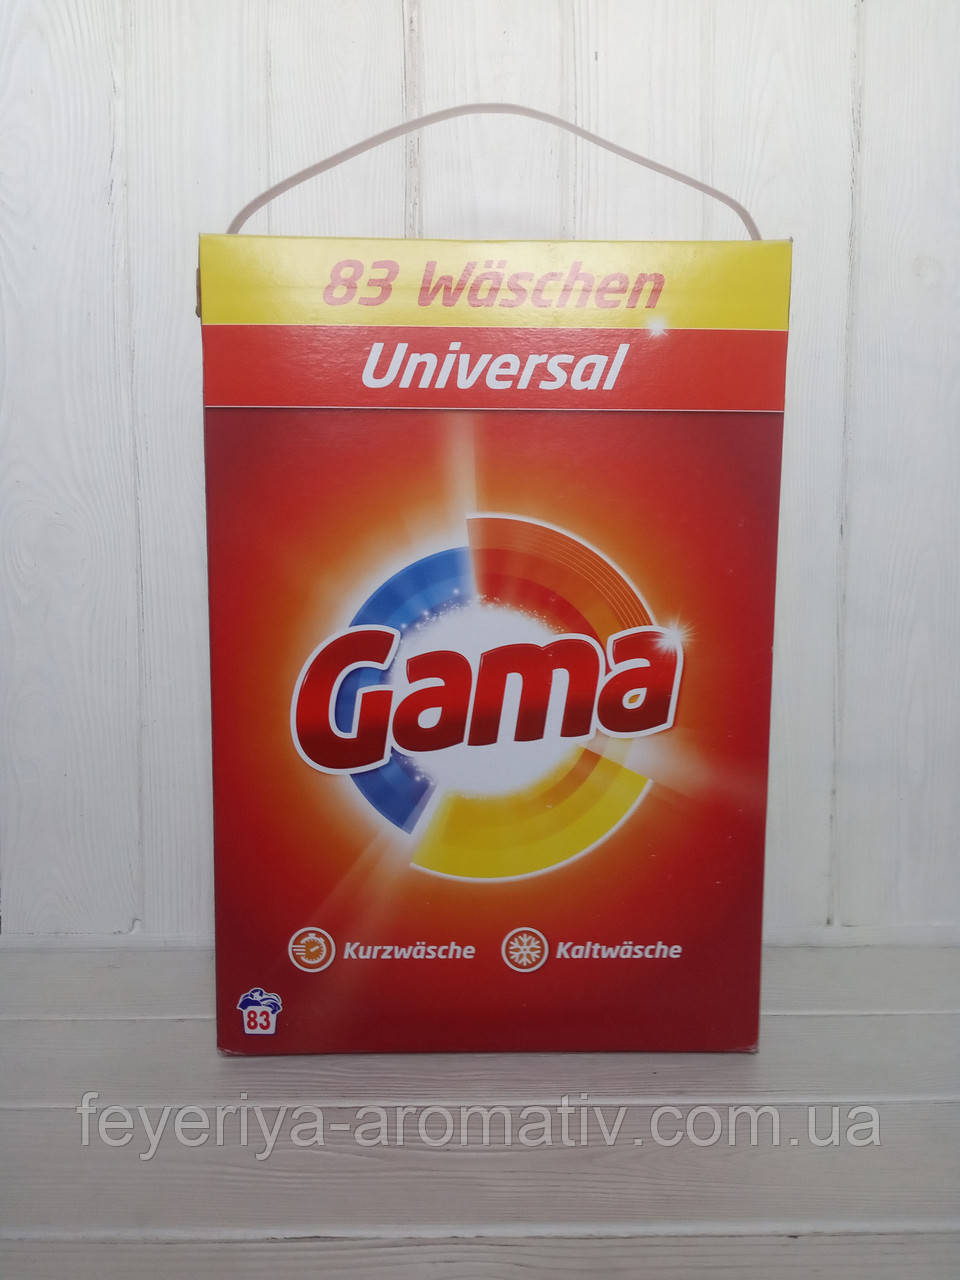 Порошок для прання Vizir Gama Universal (83 прання) 5.395 кг (Іспанія)